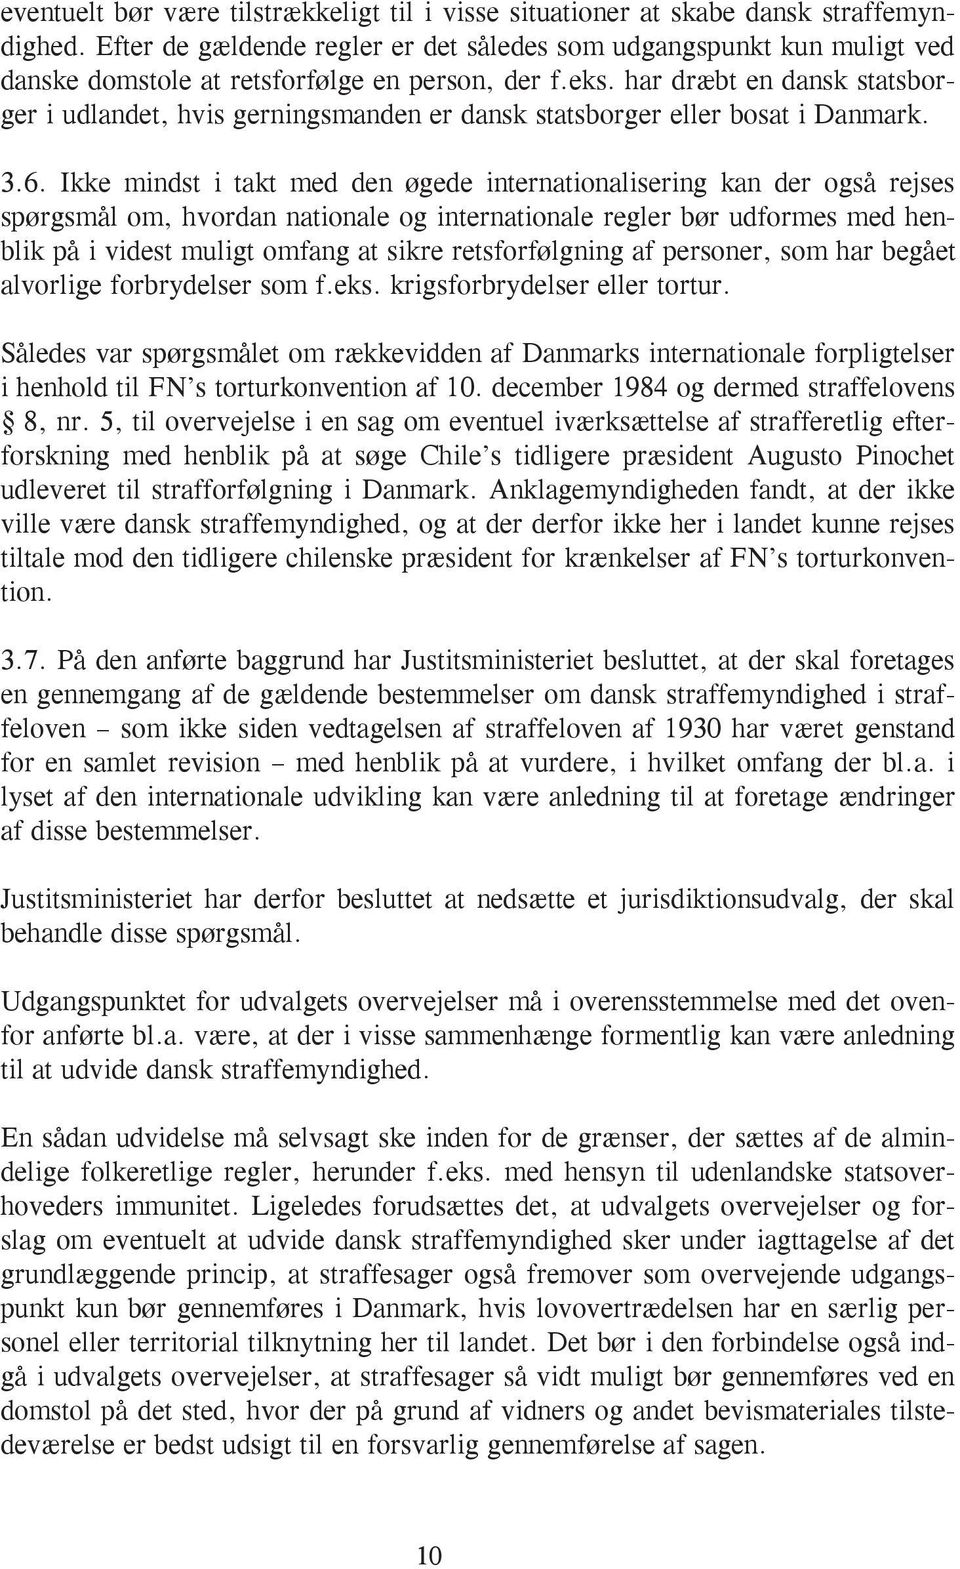 har dræbt en dansk statsborger i udlandet, hvis gerningsmanden er dansk statsborger eller bosat i Danmark. 3.6.